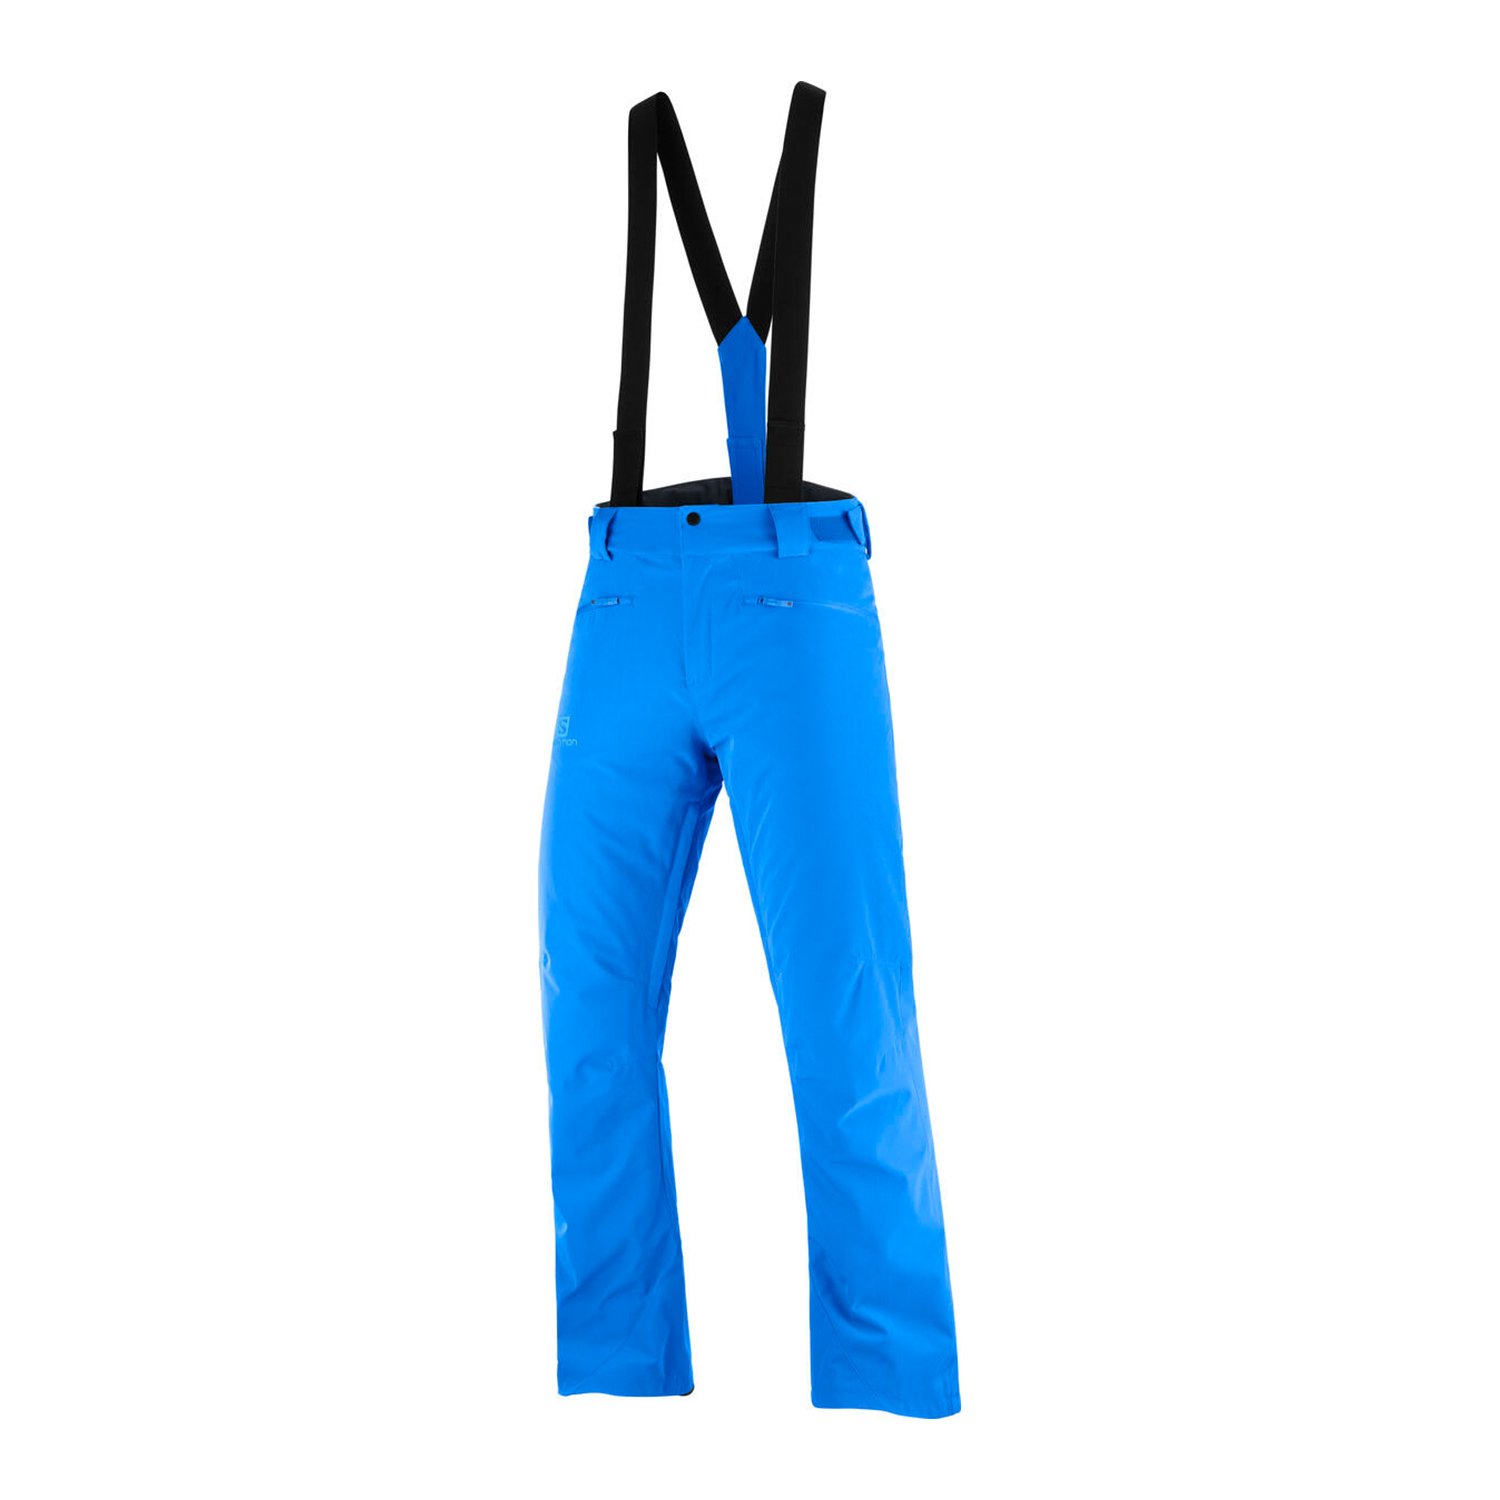 Salomon Stance Erkek Kayak Pantolonu - Mavi - 1